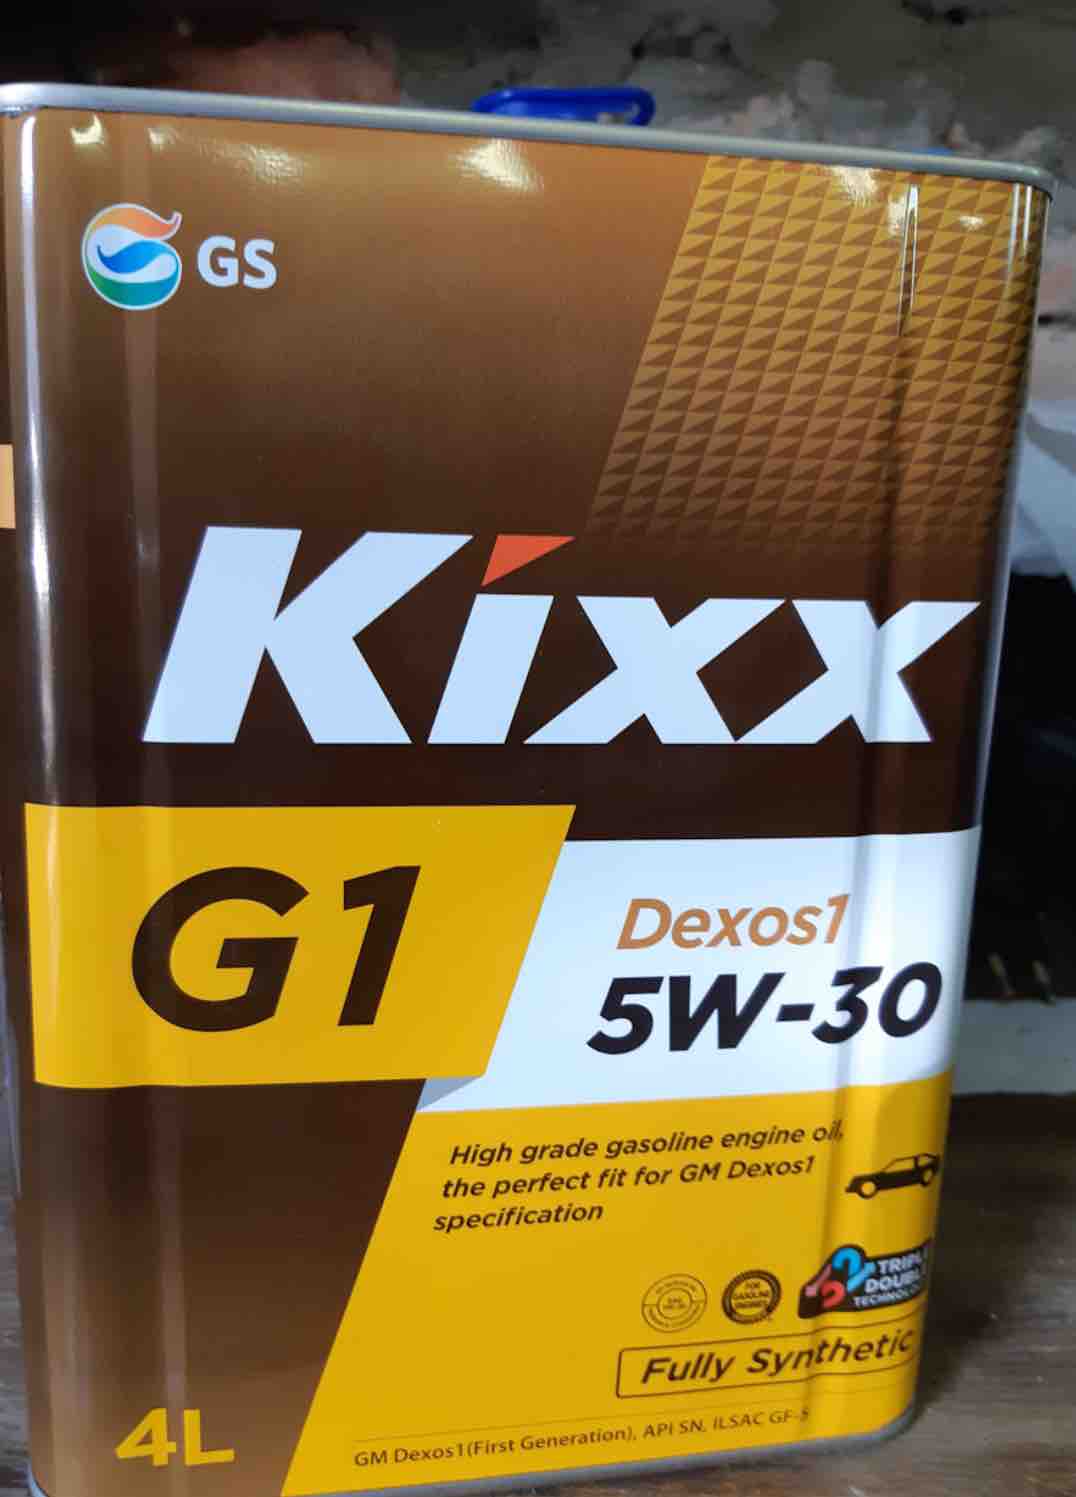 Масло kixx 5w30 g1. Масло Кикс g1 5w30. Моторное масло Kixx 5w30. Масло Кикс 5w30 g. Масло Кикс 5w30 dexos1.